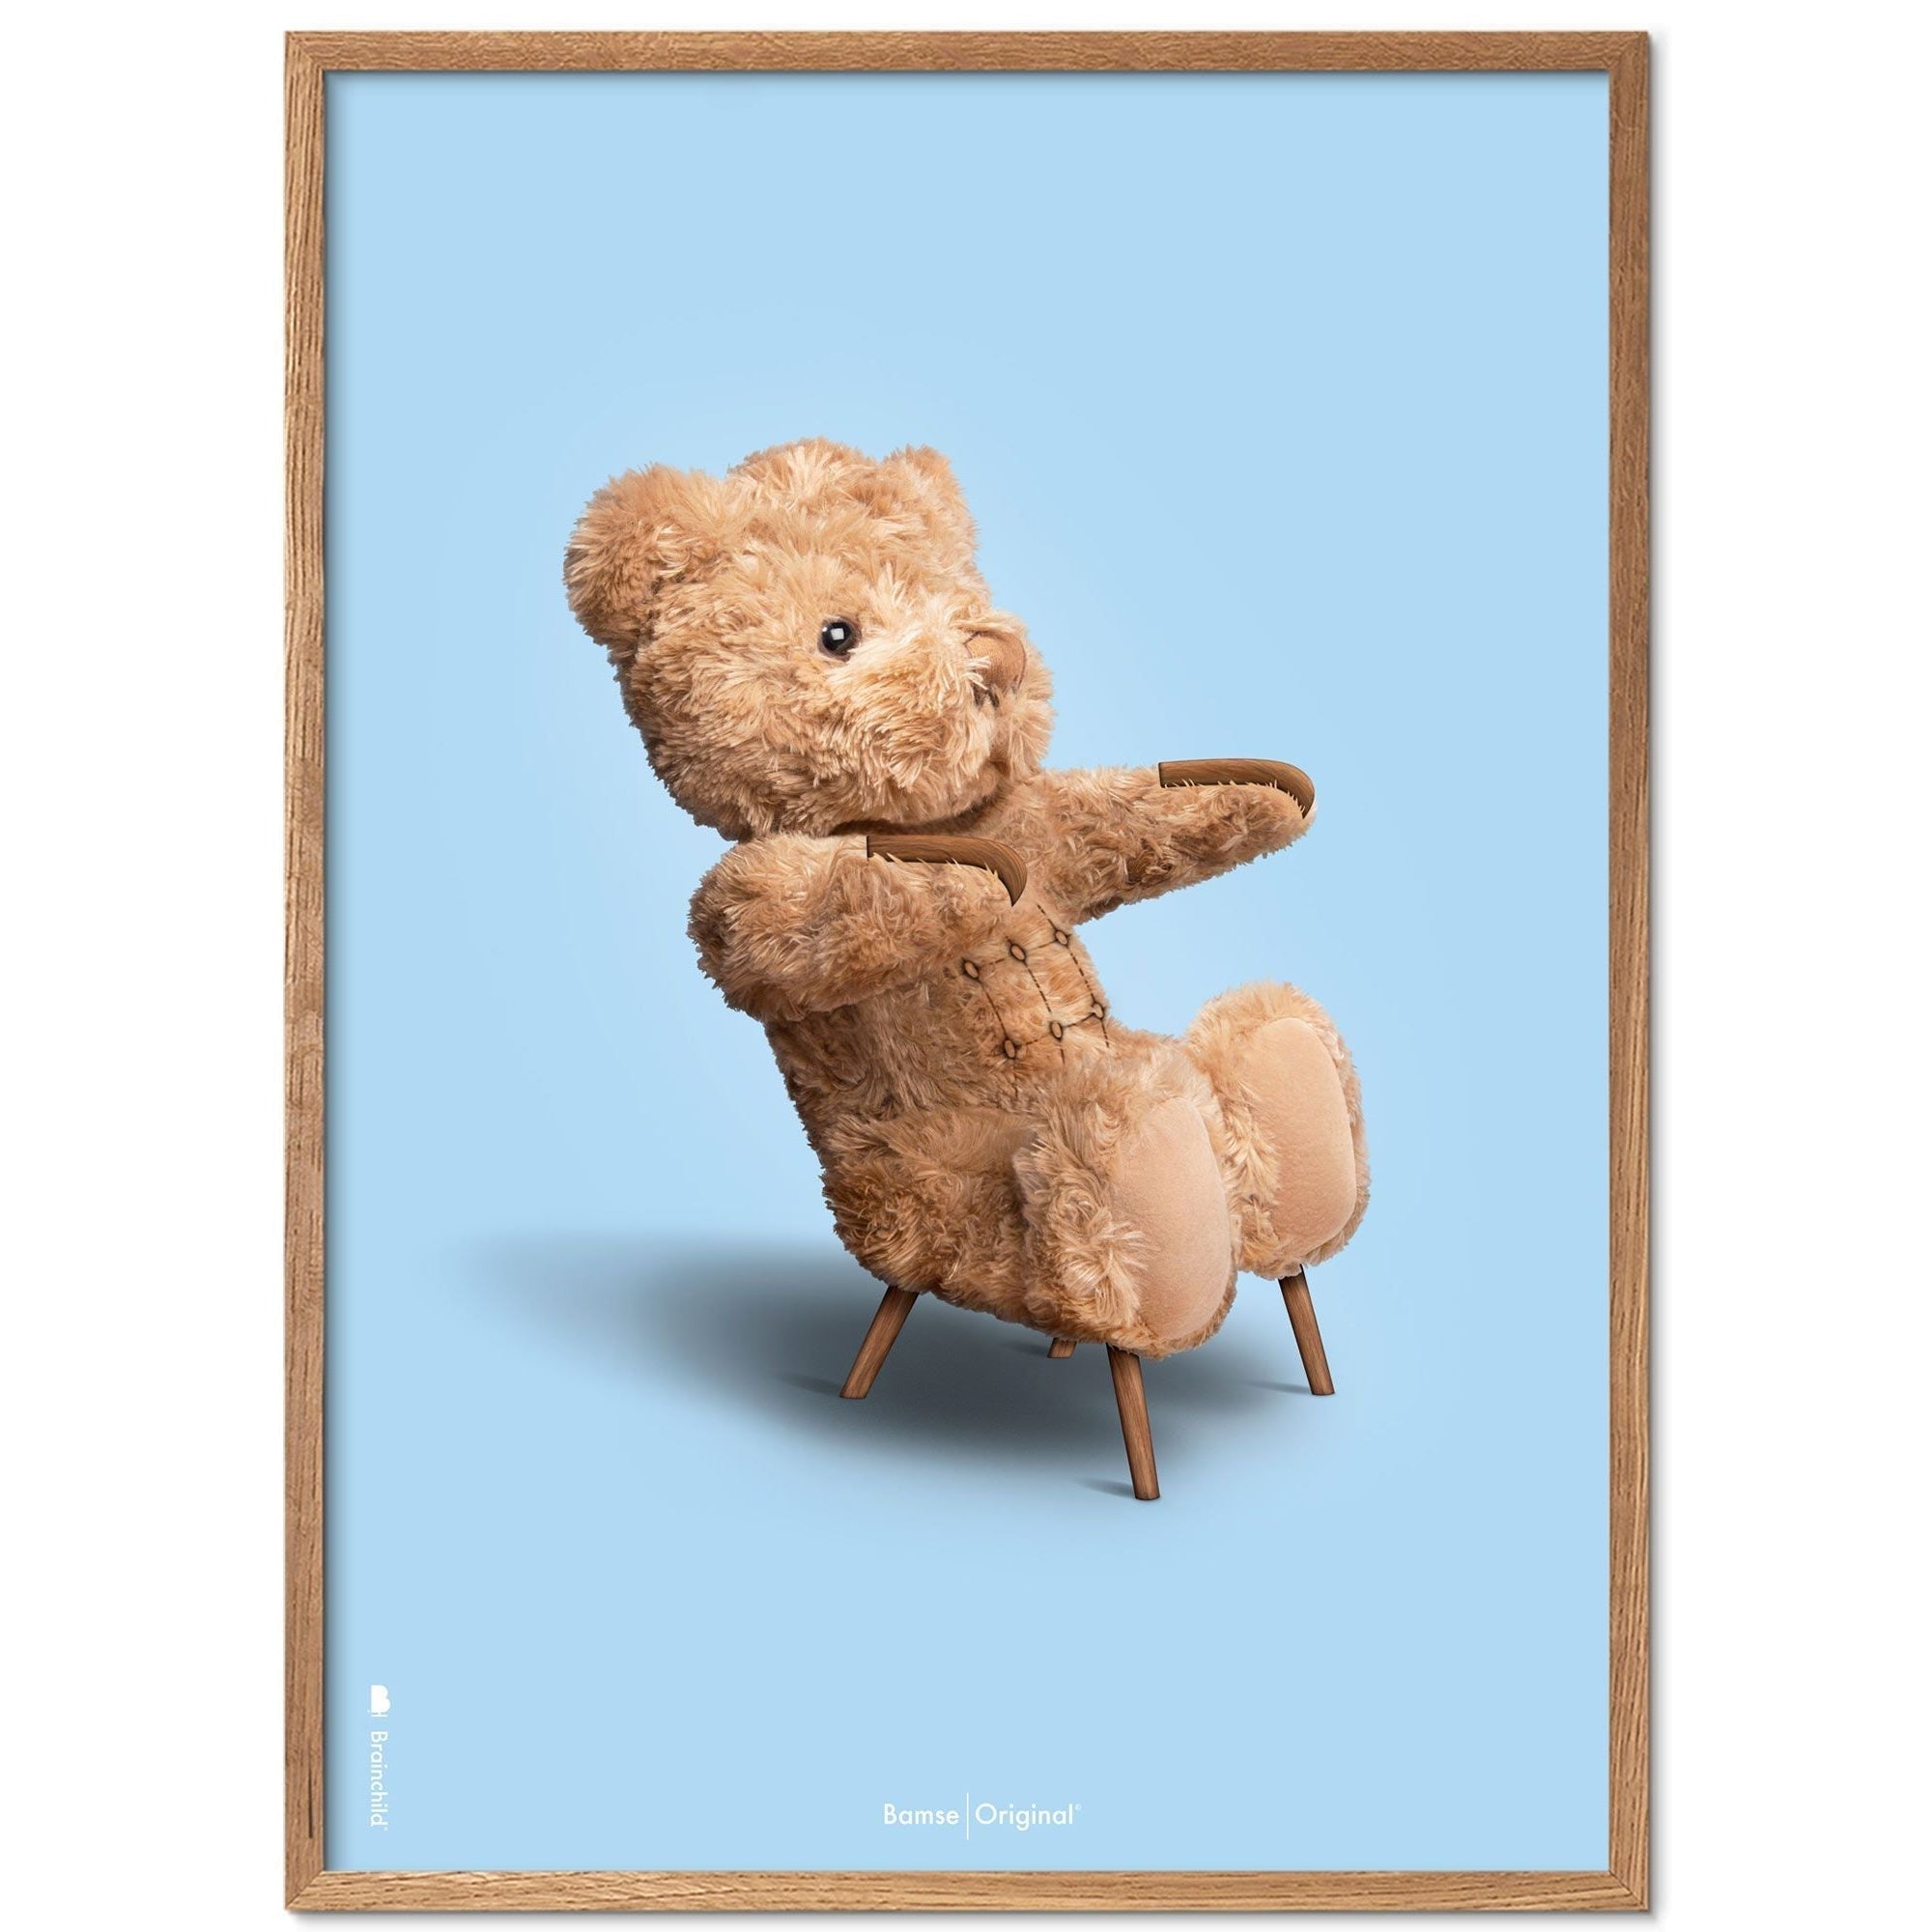 Brainchild Teddy Bear Classic Poster Frame lavet af let træ Ramme 30x40 cm, lyseblå baggrund